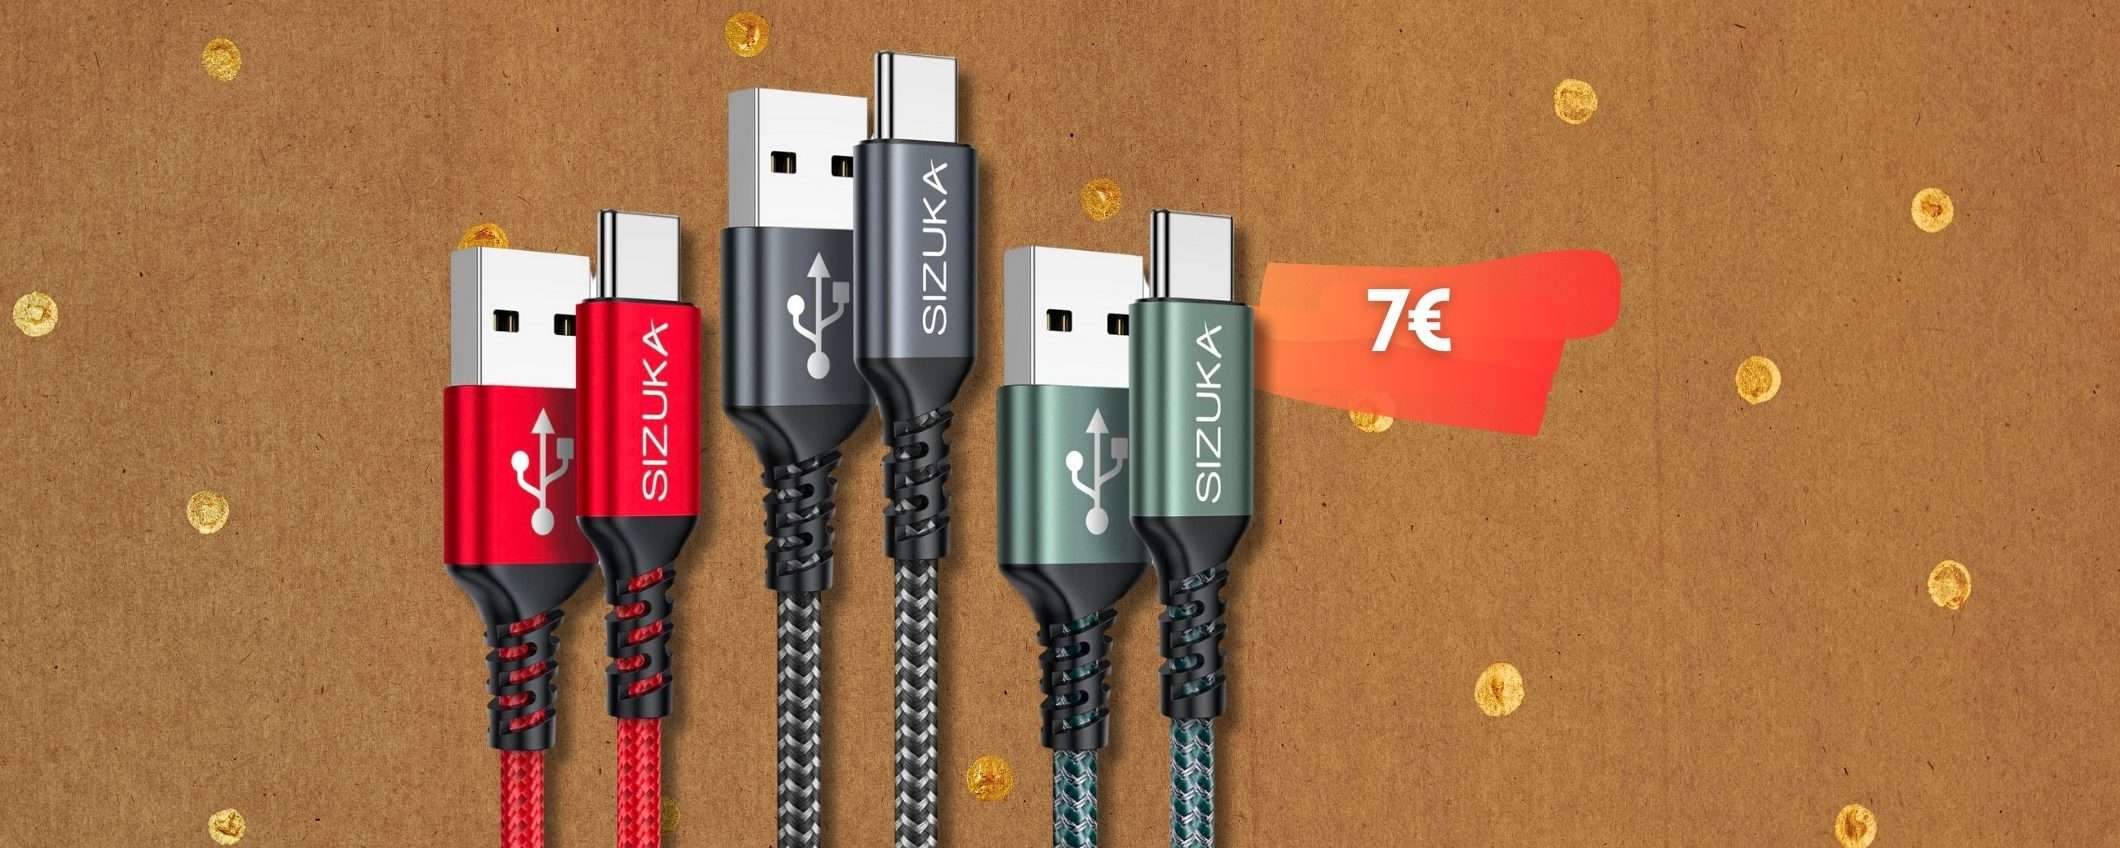 Cavi USB C per tutte le esigenze, 3pz da 2 metri a prezzo RIDICOLO